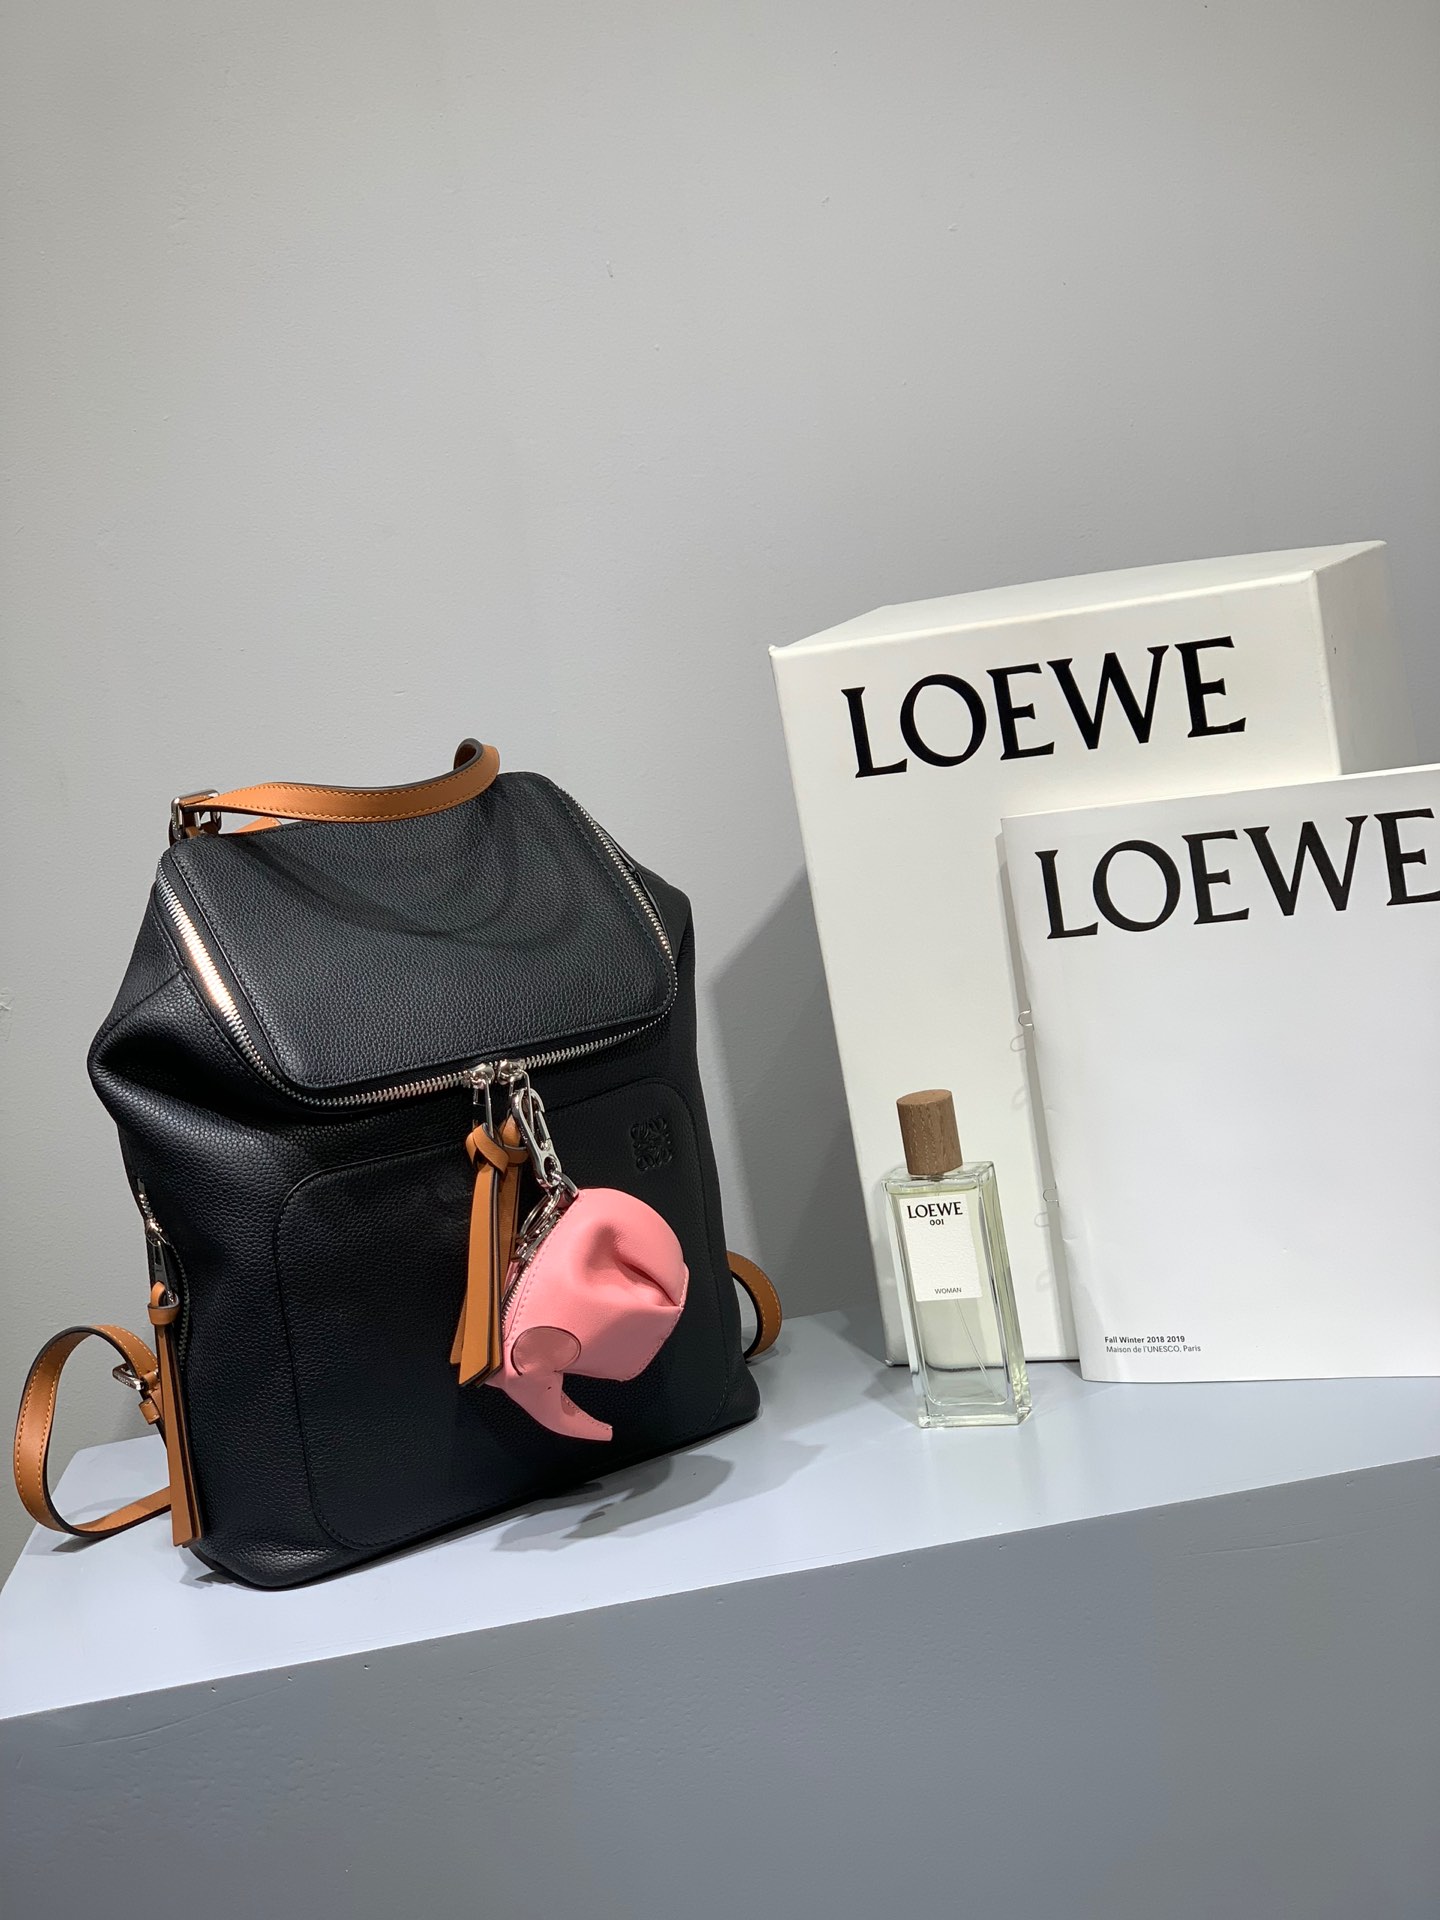 Loewe Goya Bags Backpack Calfskin Cowhide Fashion